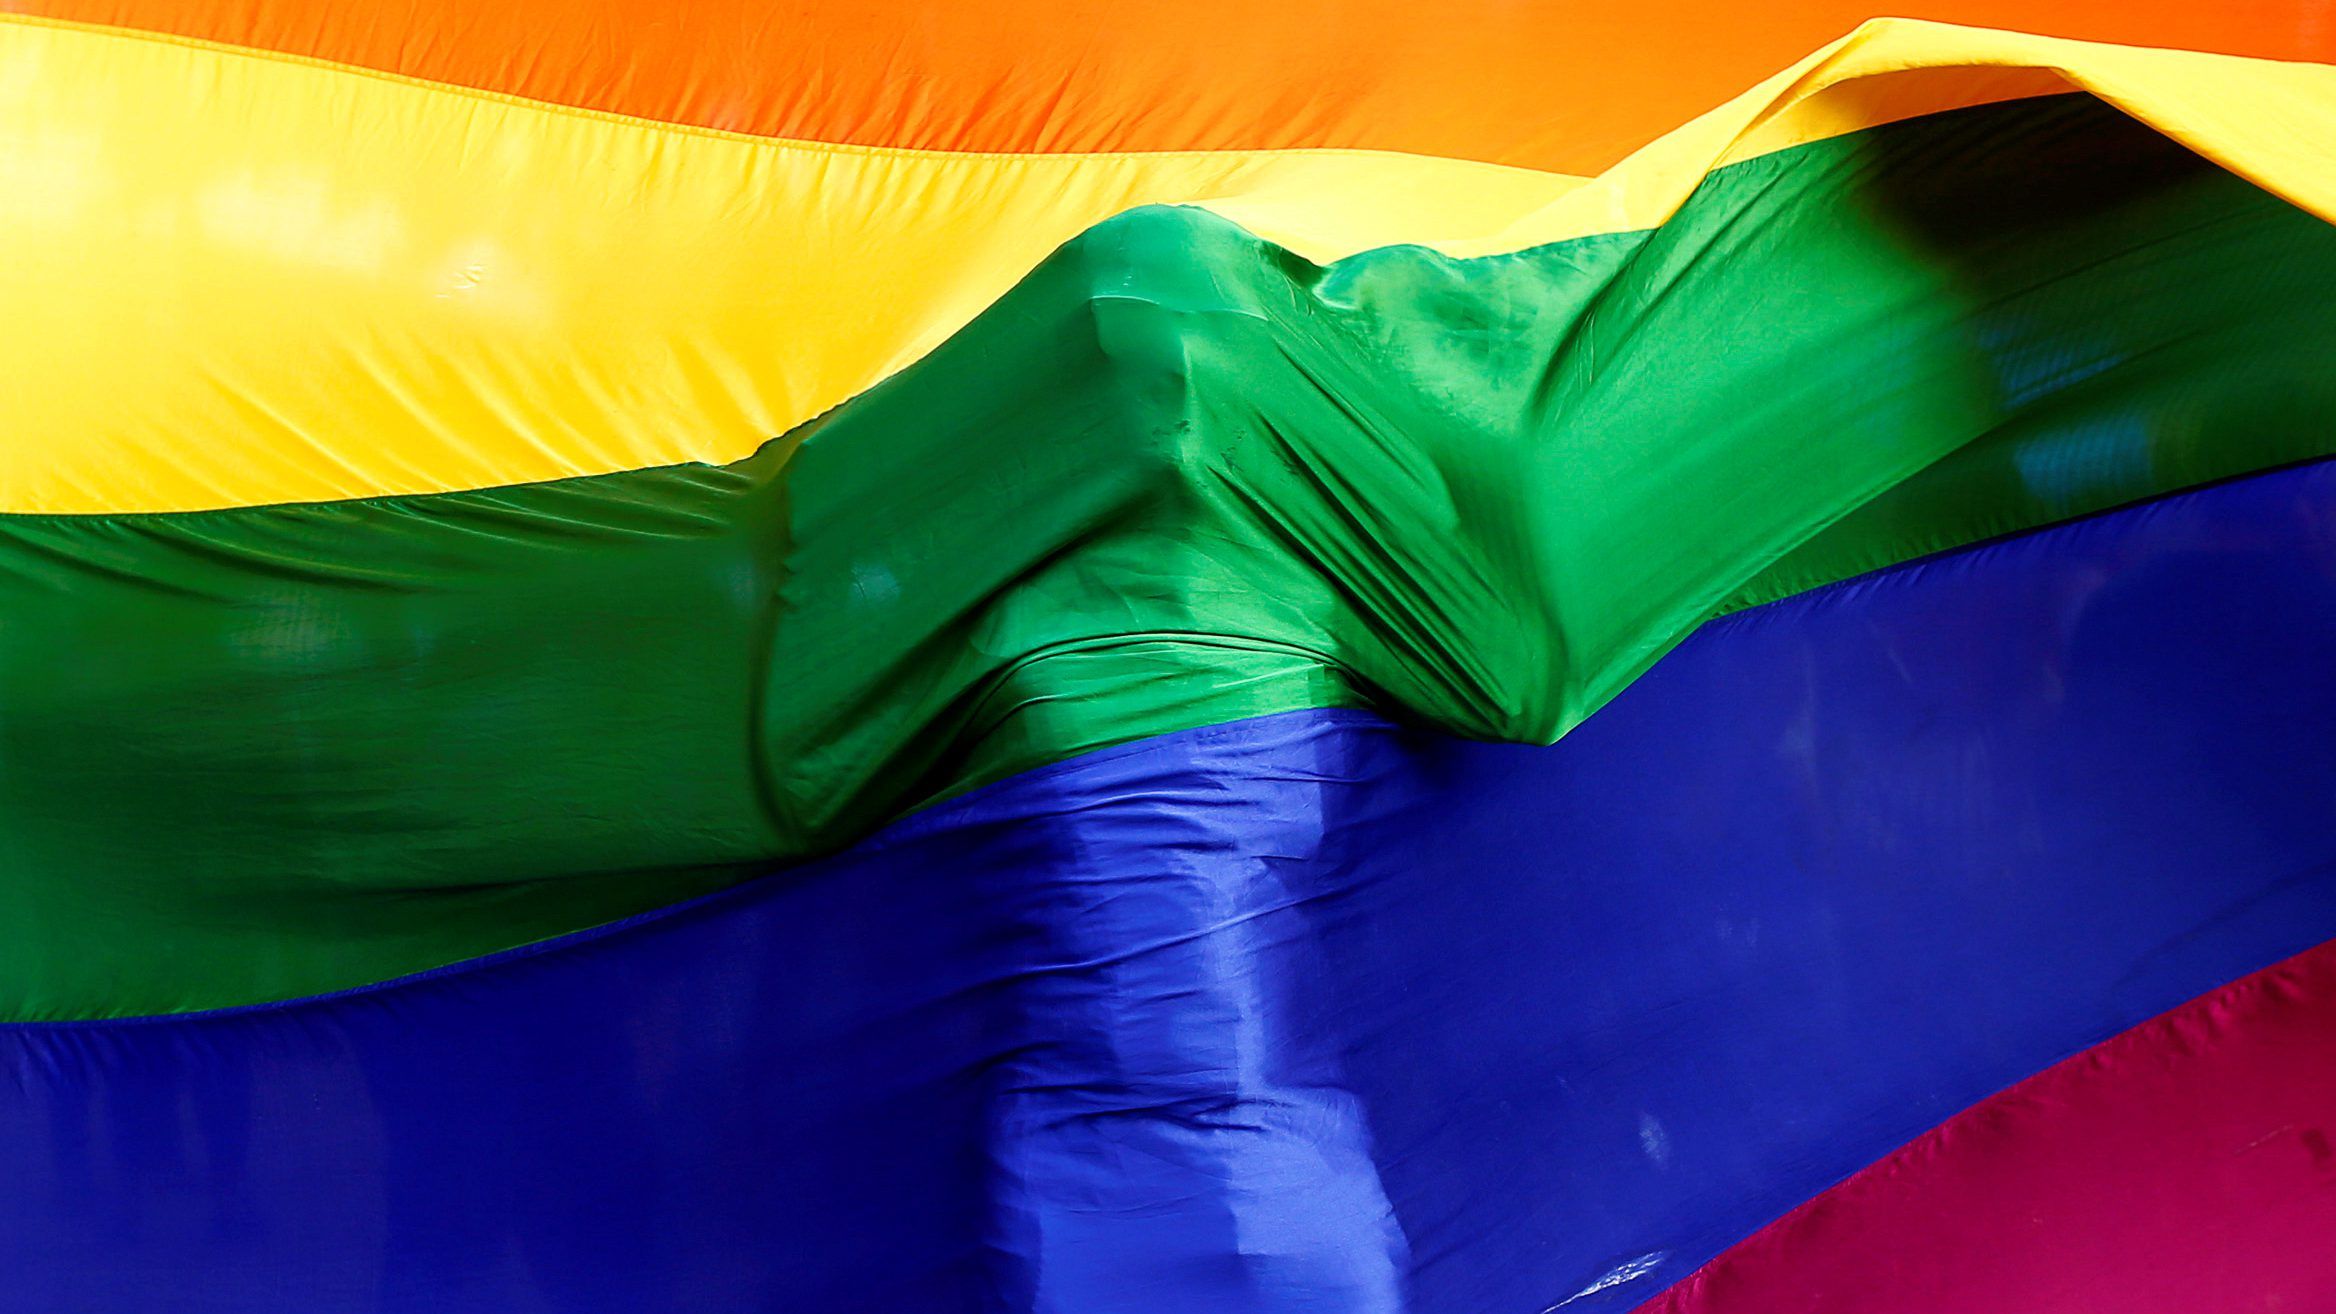  İran, Transseksüeller İçin Kabul, Eşcinseller İçin “Ölüm” Teklifinde Bulundu!